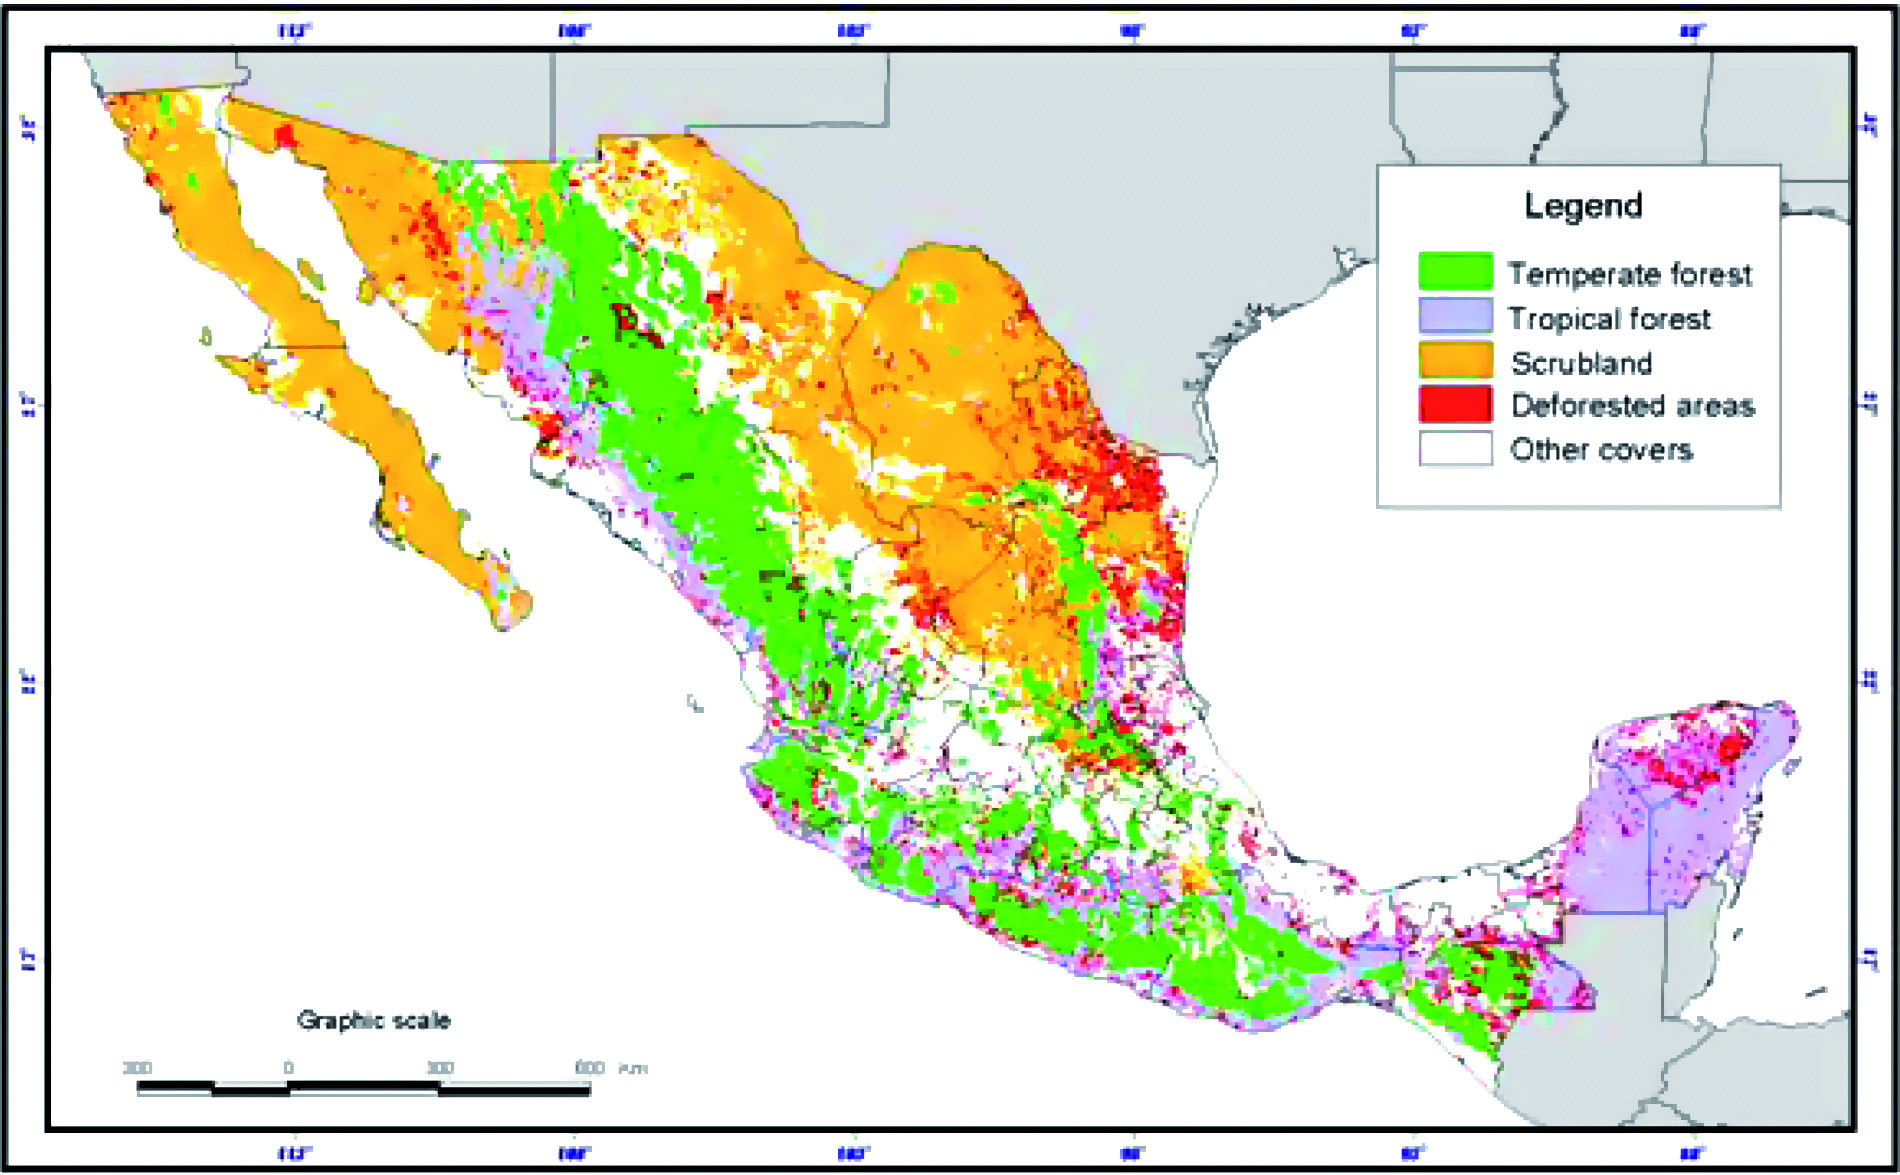 Mapa 1. Superficies deforestadas en las regiones de México. Sección: Investigación Fuente: Velazquez et al., 2005.